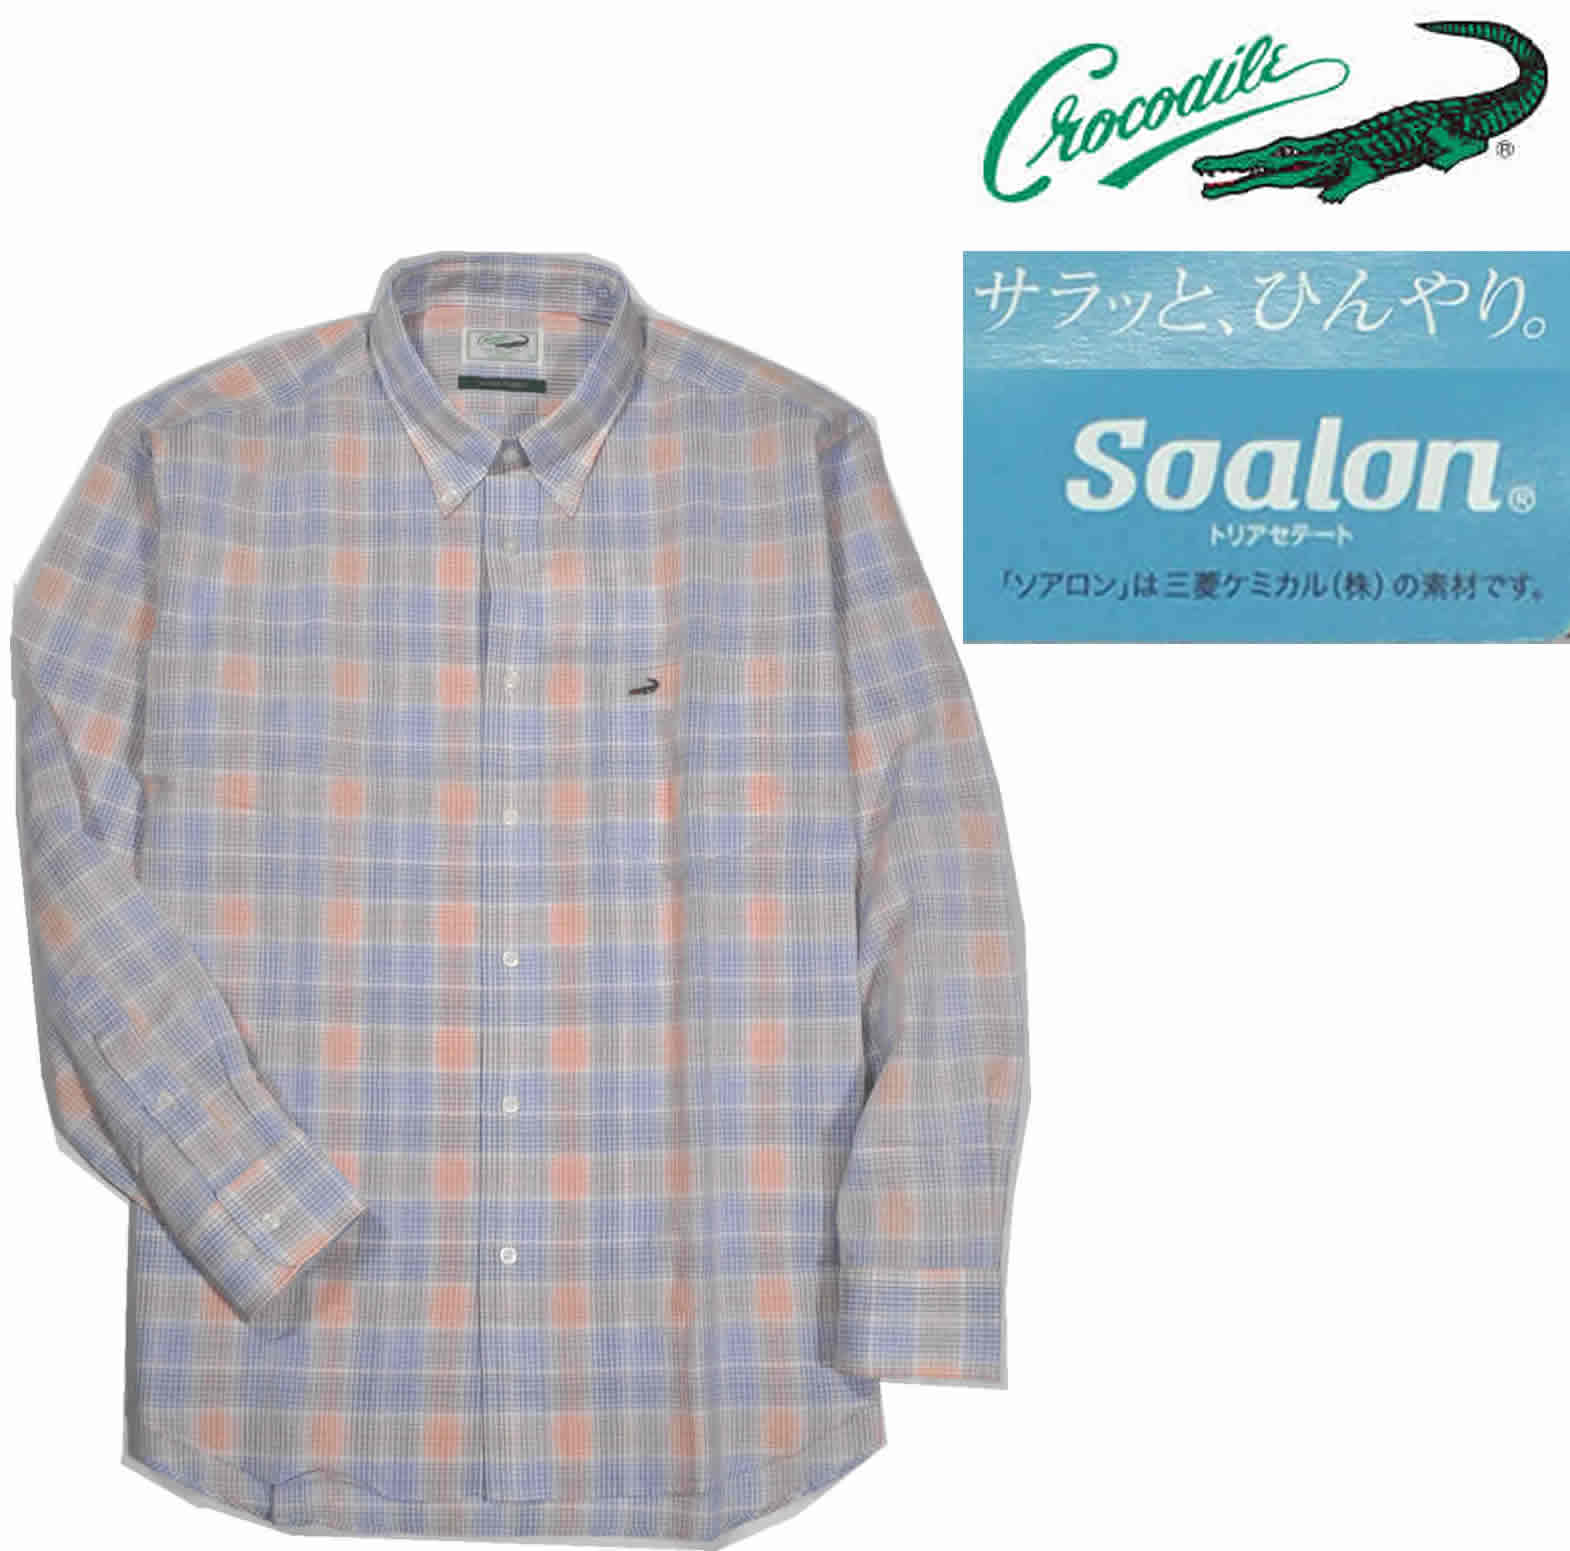 [クロコダイル] ワークシャツ長袖 大きいサイズ 格子柄 Soalon樹の繊維 春夏